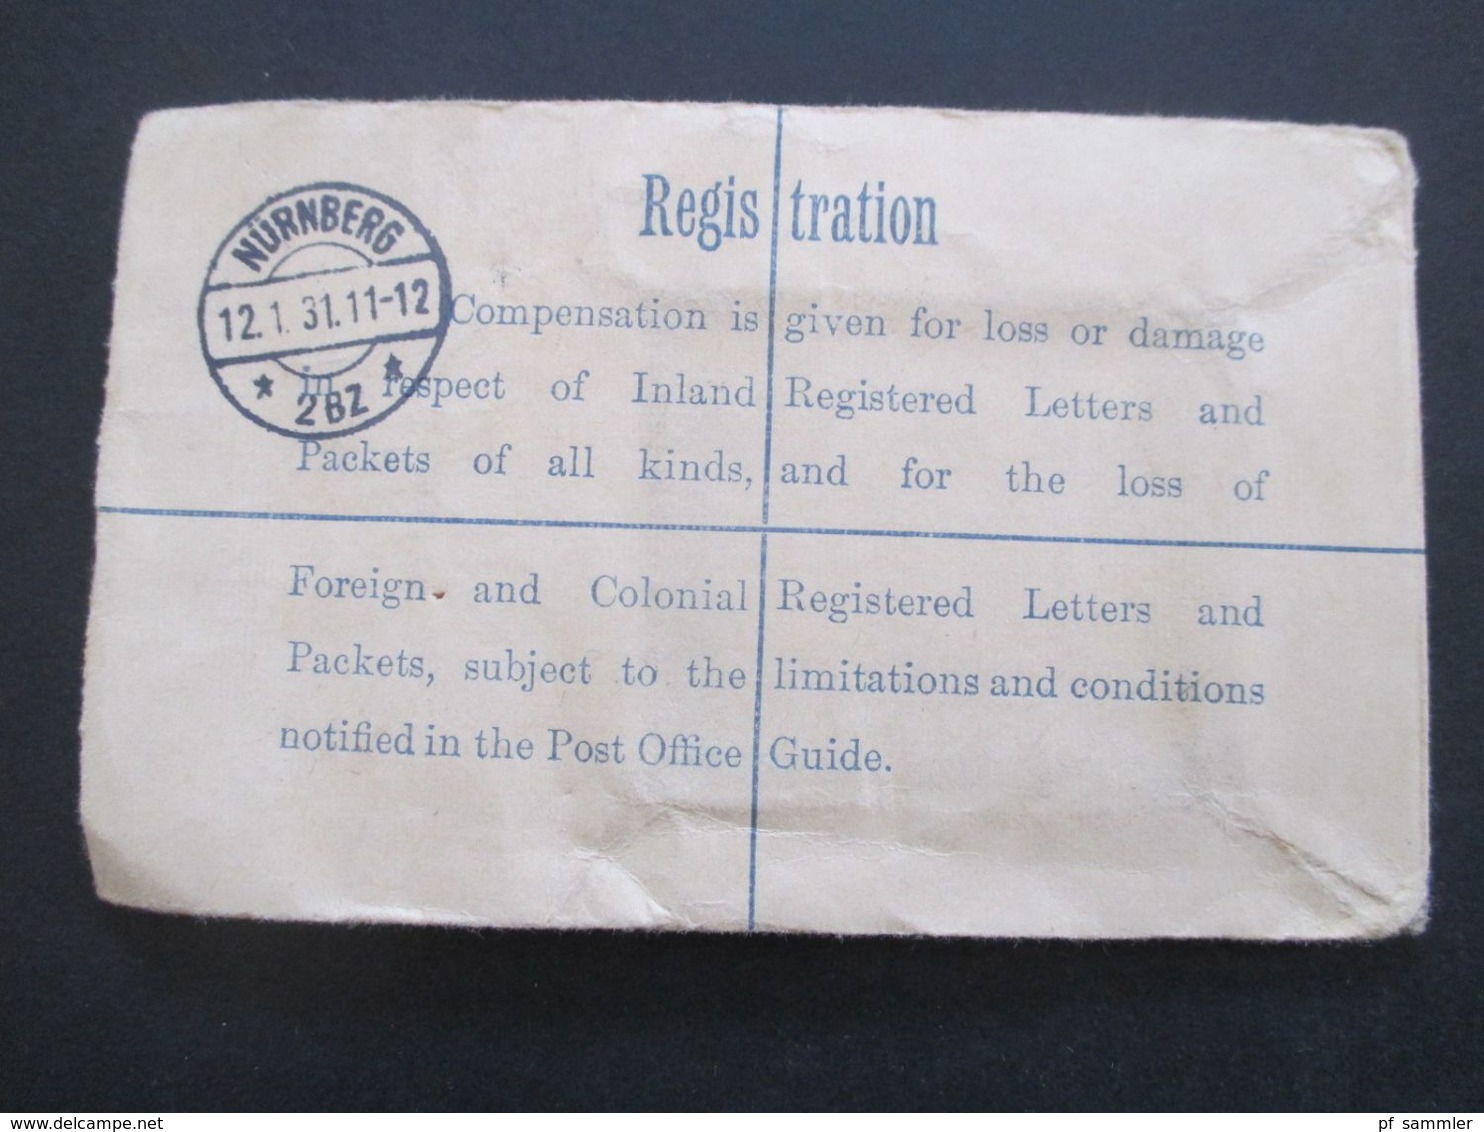 GB 1897 - ca. 1931 Registered Letter alle mit Zusatzfrankaturen nach Nürnberg gesendet. Viele Stempel!! 37 Belege.